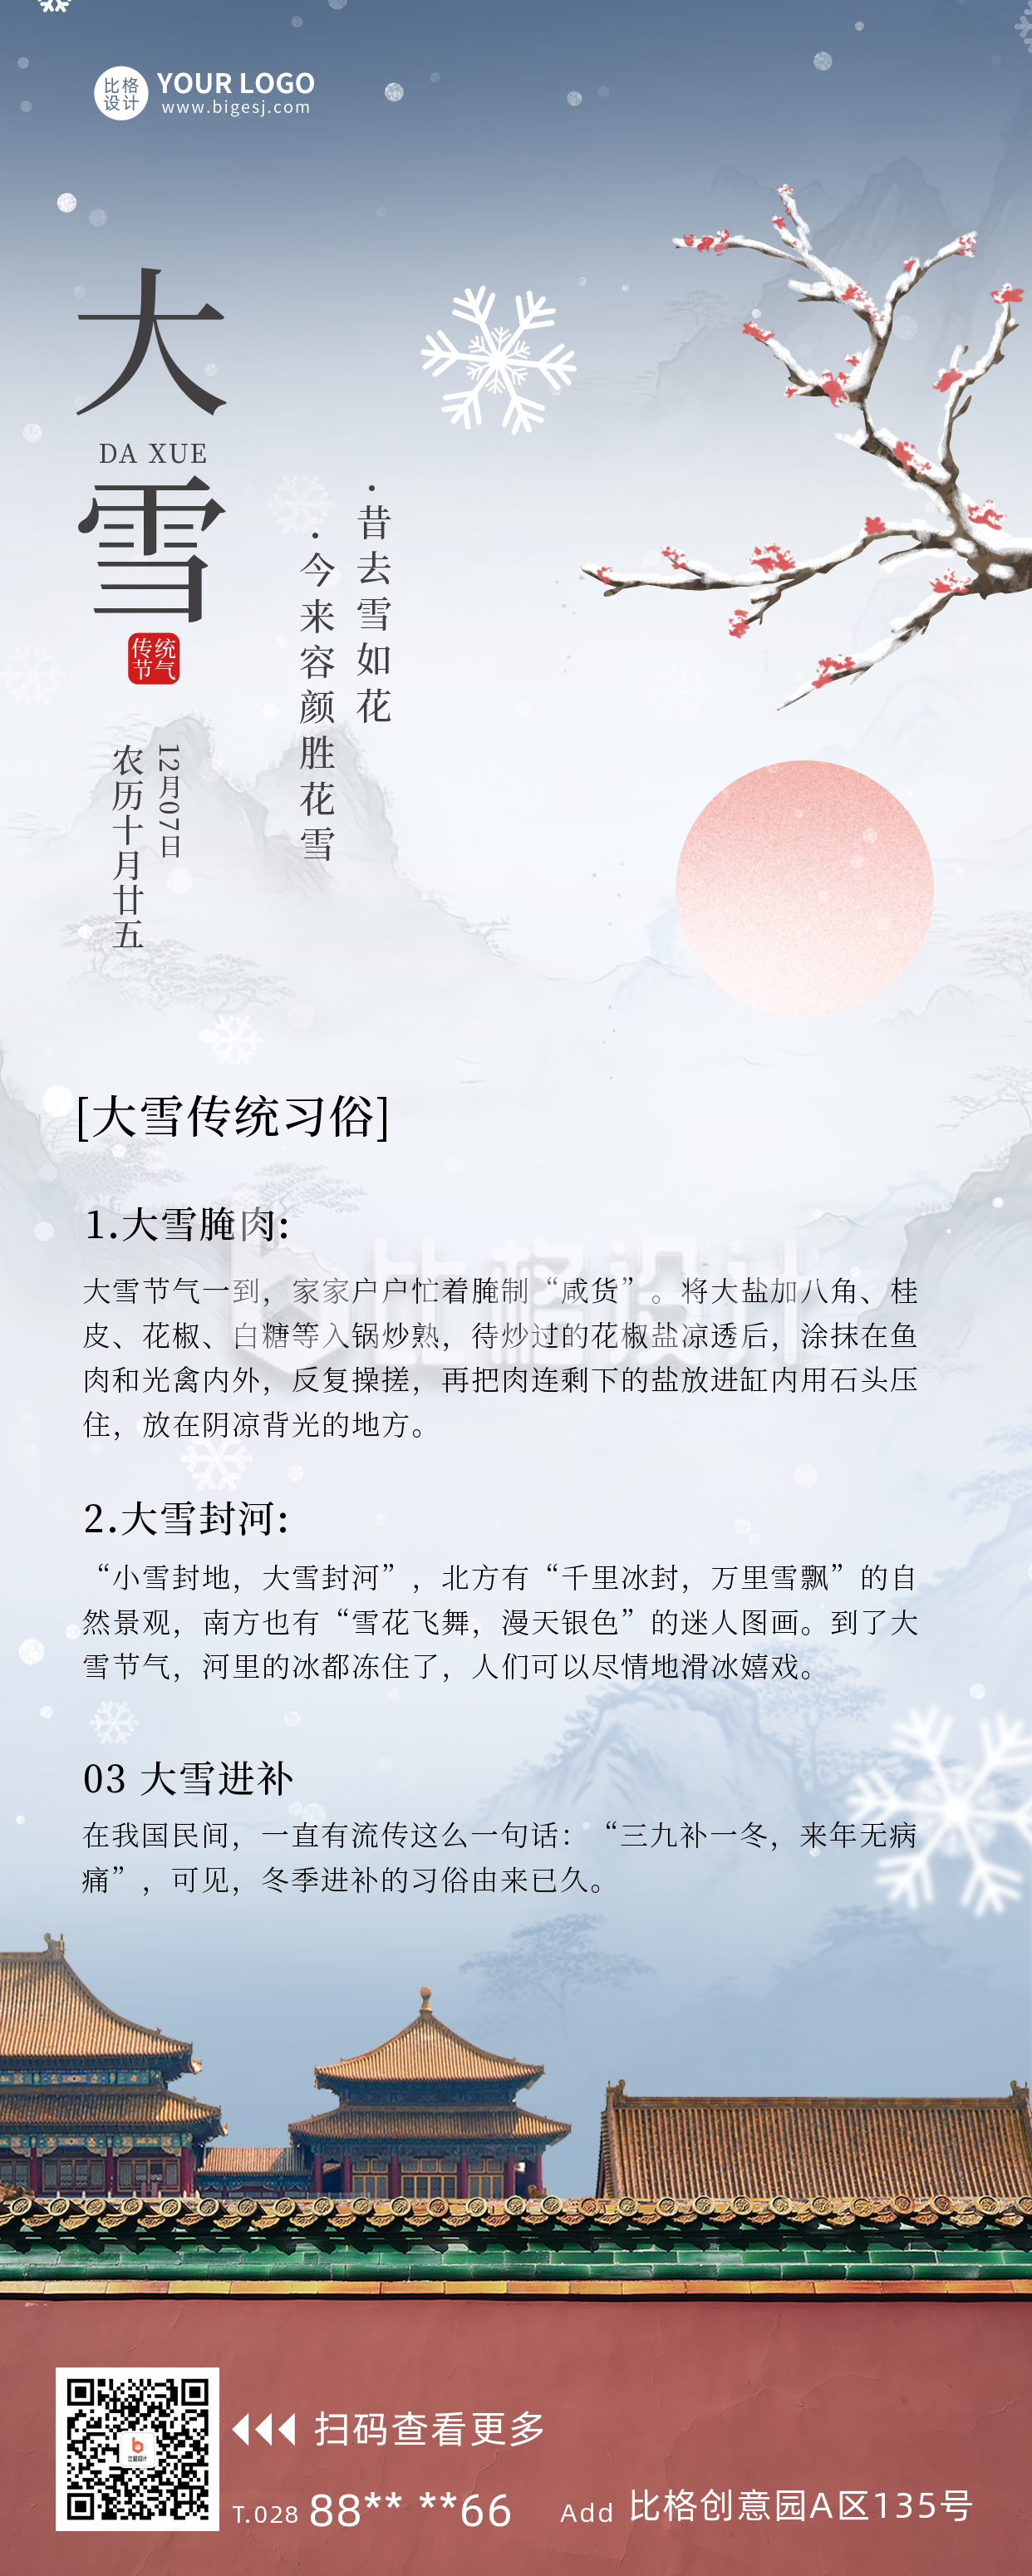 大雪节气习俗科普长图海报